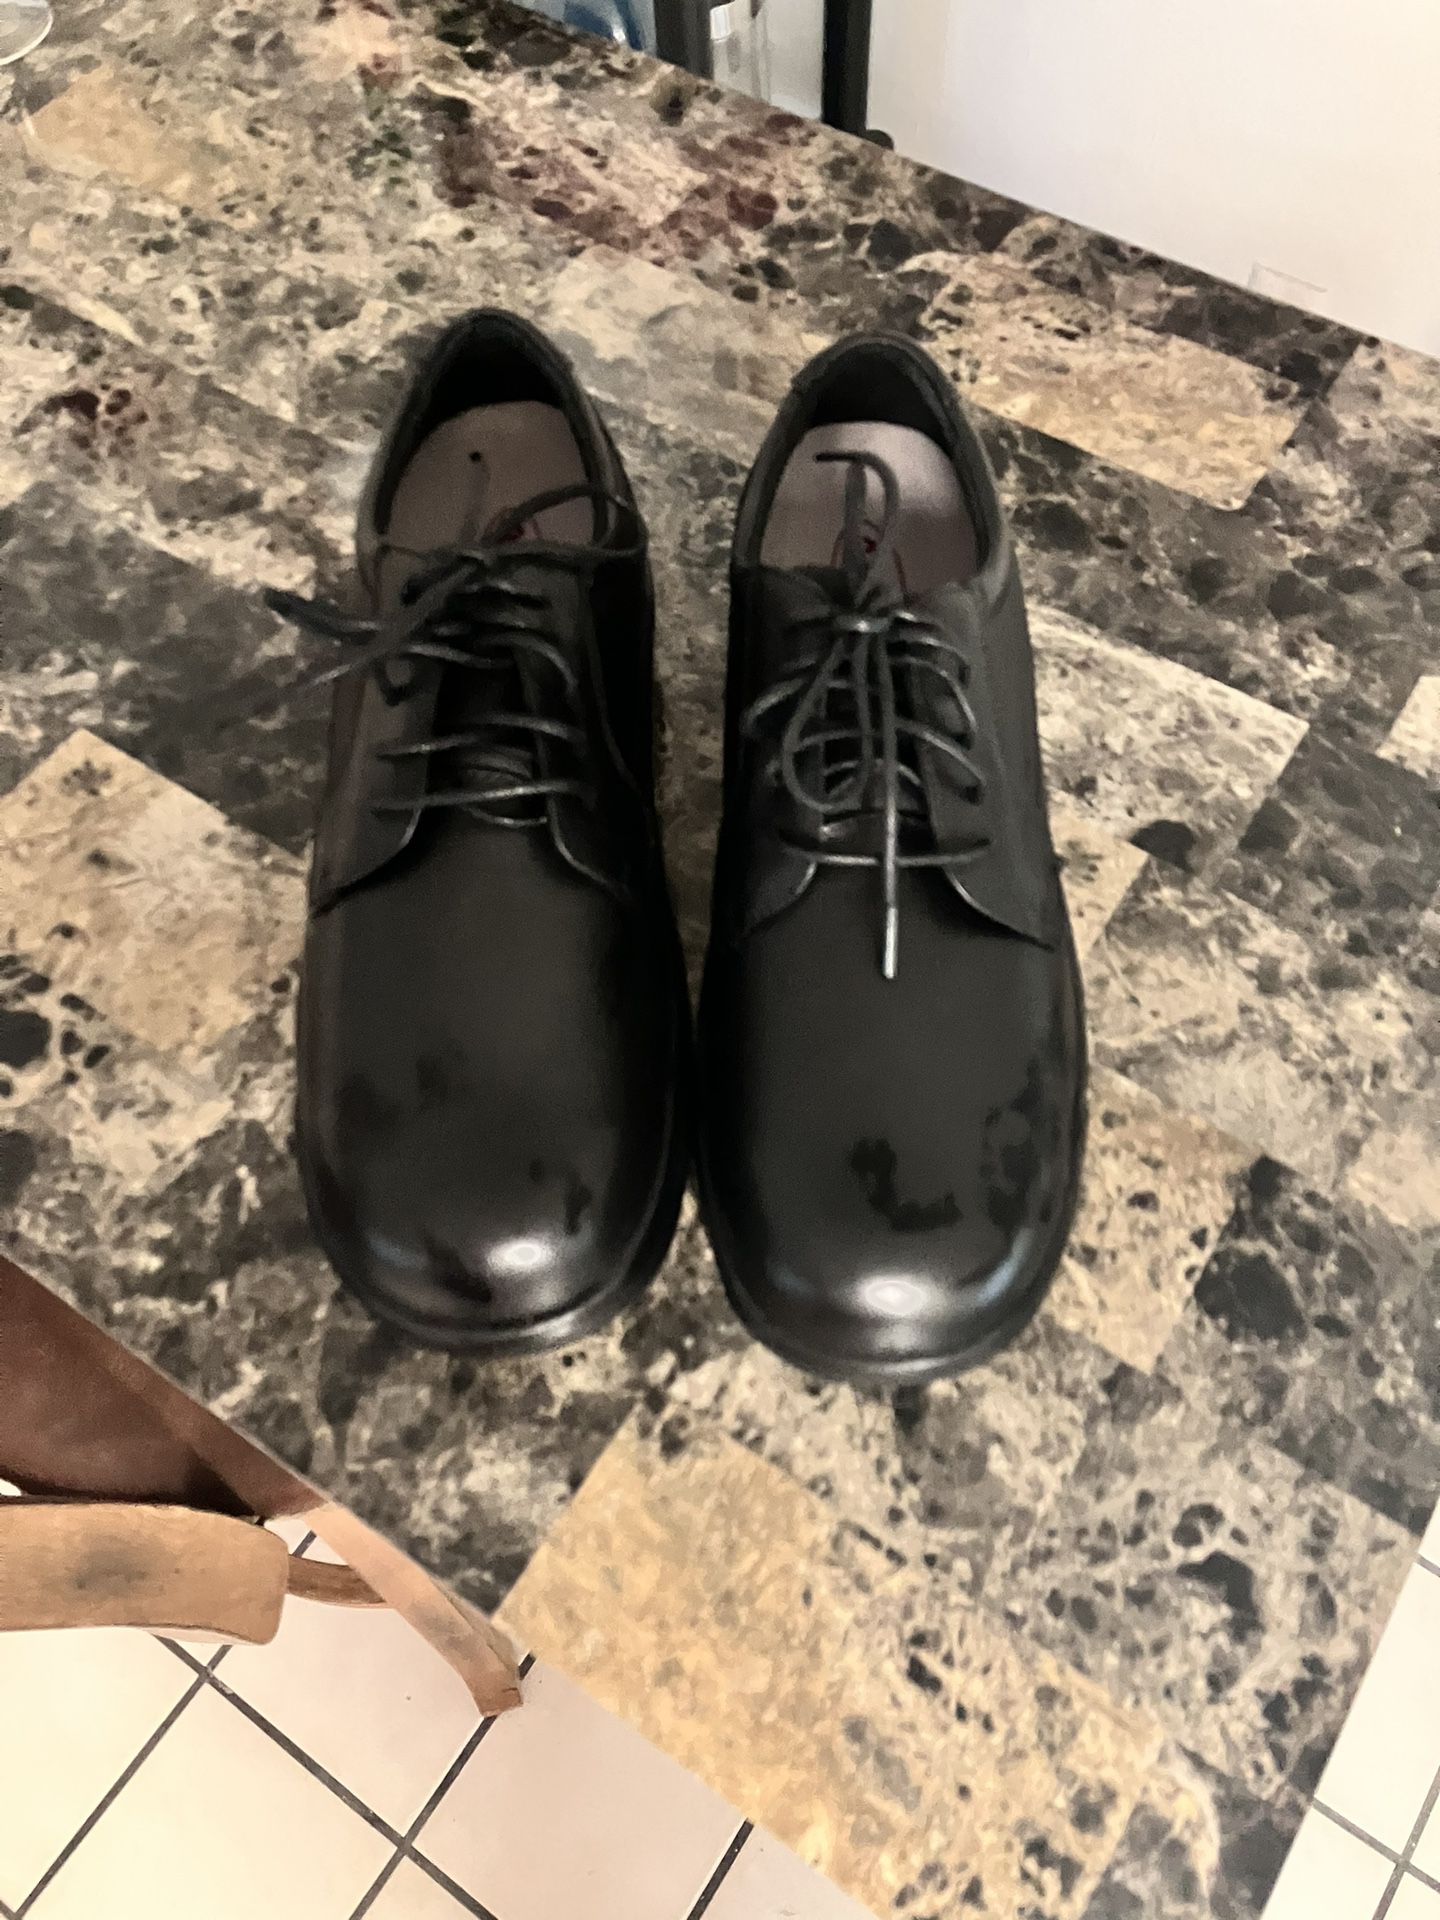  Men’s Black Dress Shoes